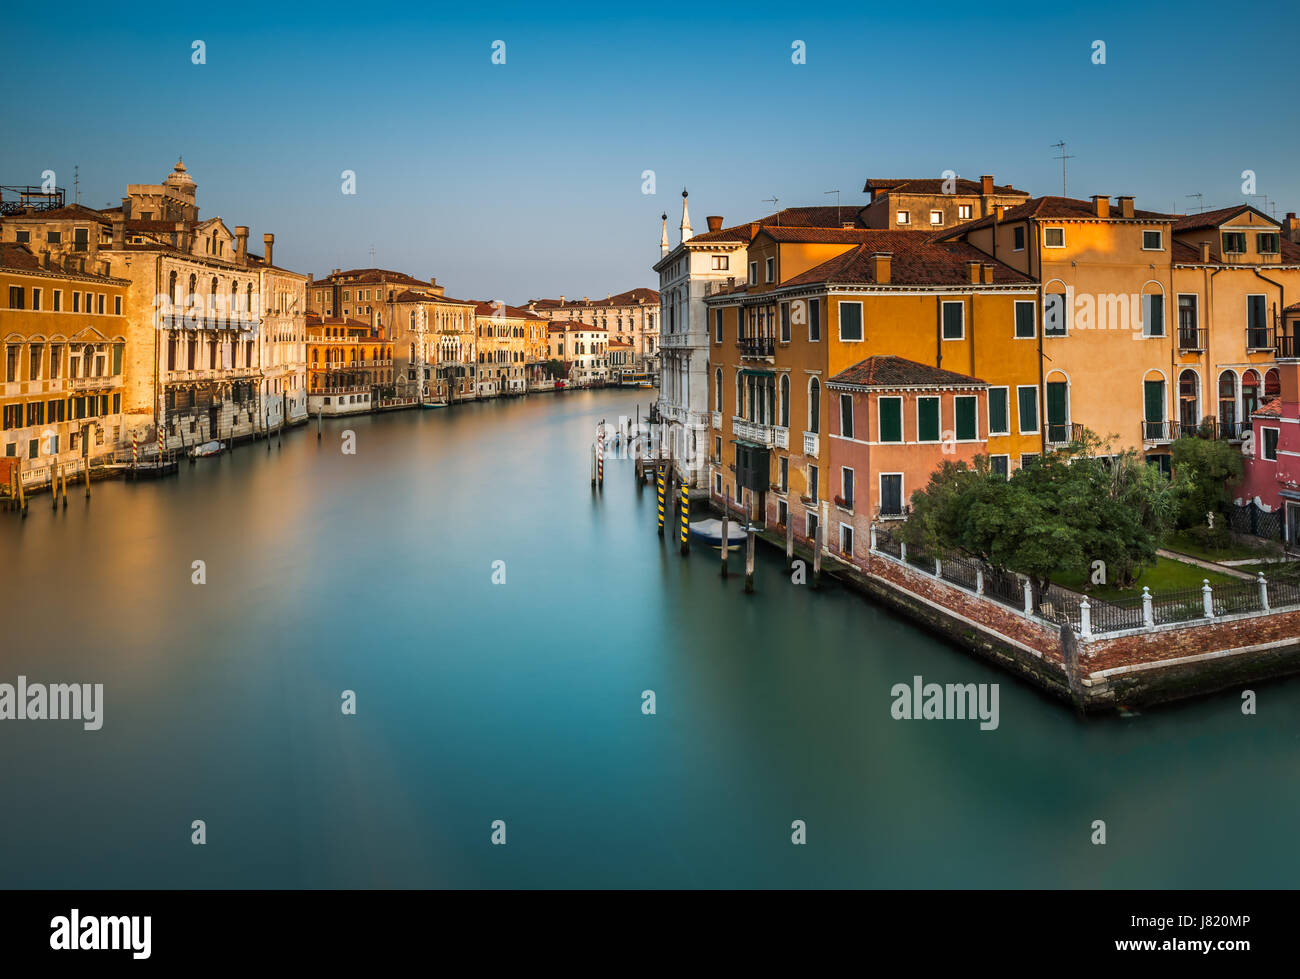 Vue sur Grand Canal de pont de l'Accademia au lever du soleil, Venise, Italie Banque D'Images